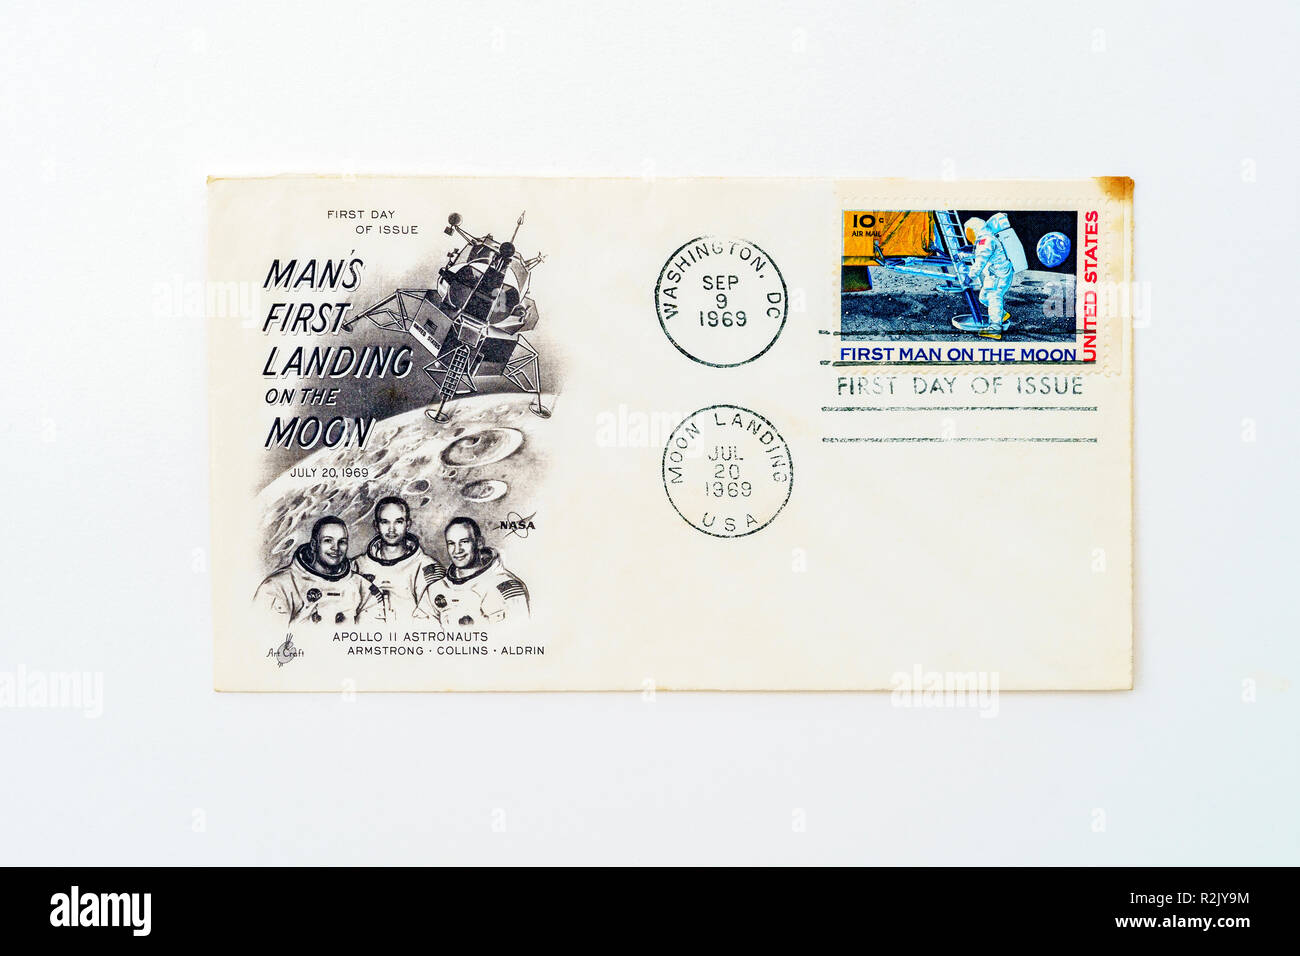 1969 premier alunissage timbre commémoratif à premier jour de l'enveloppe de tissu Banque D'Images